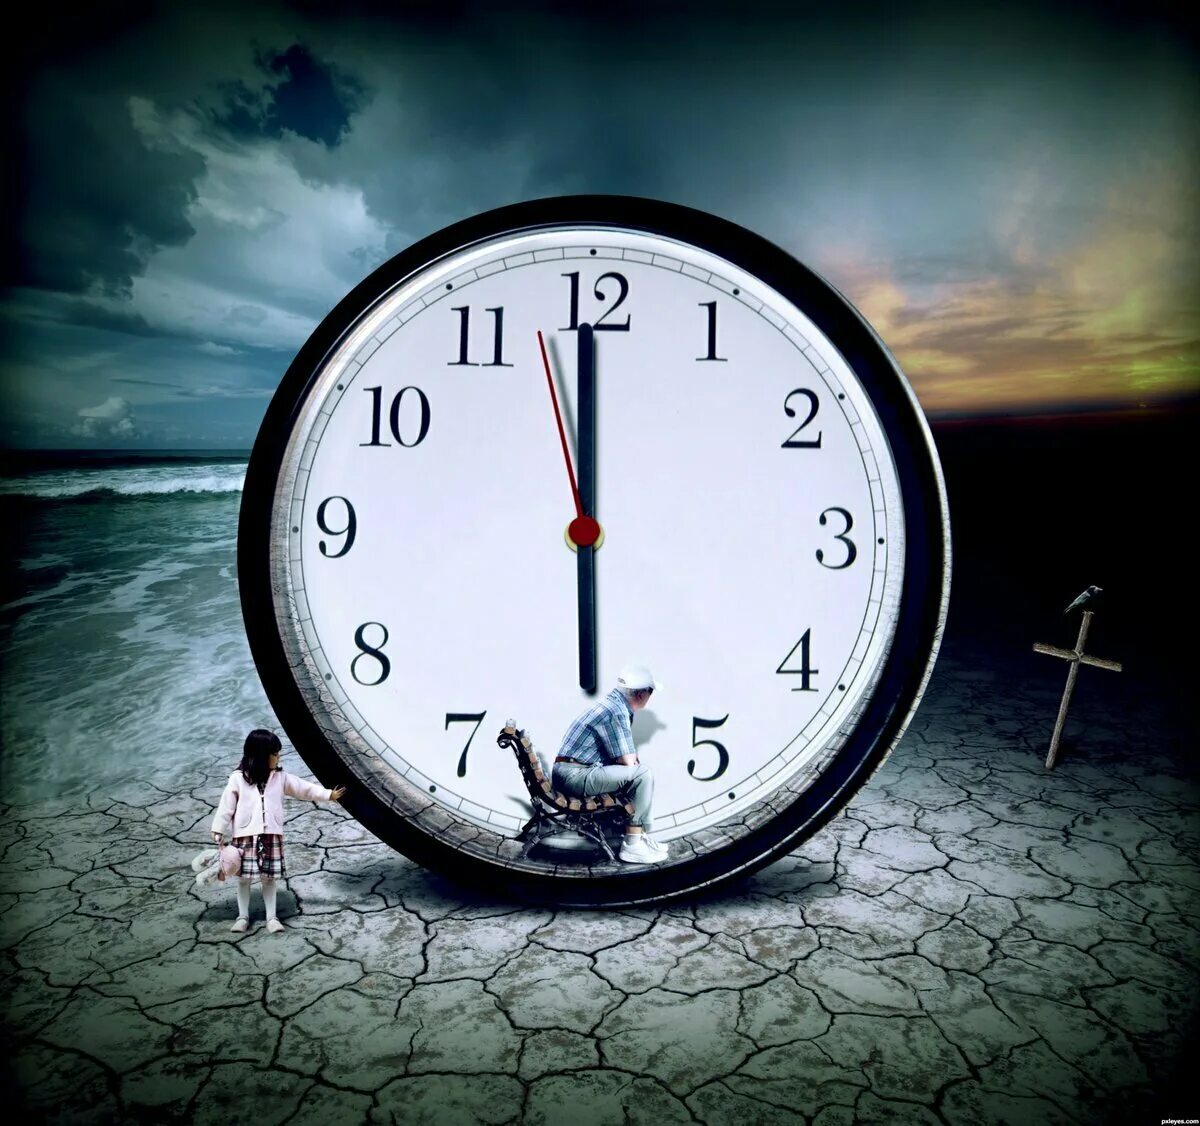 Время уйдет качество. Часы бегут. А время уходит. Изображение времени. Медленные часы.